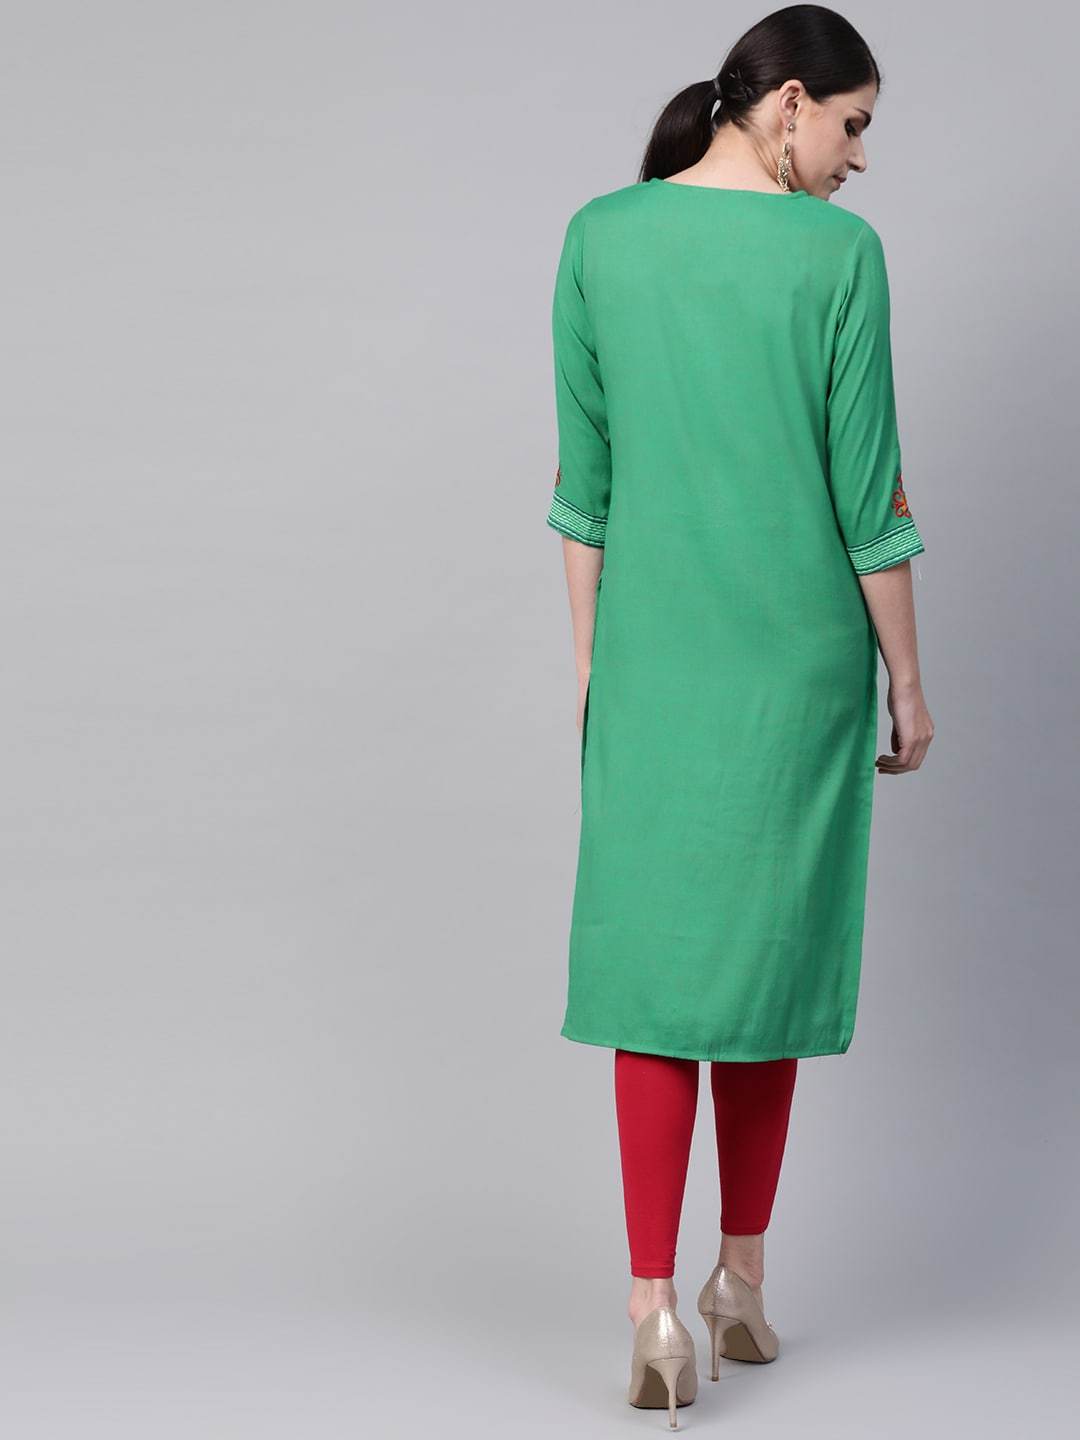 Women's Green & Red Embroidered Straight Kurta - Meeranshi